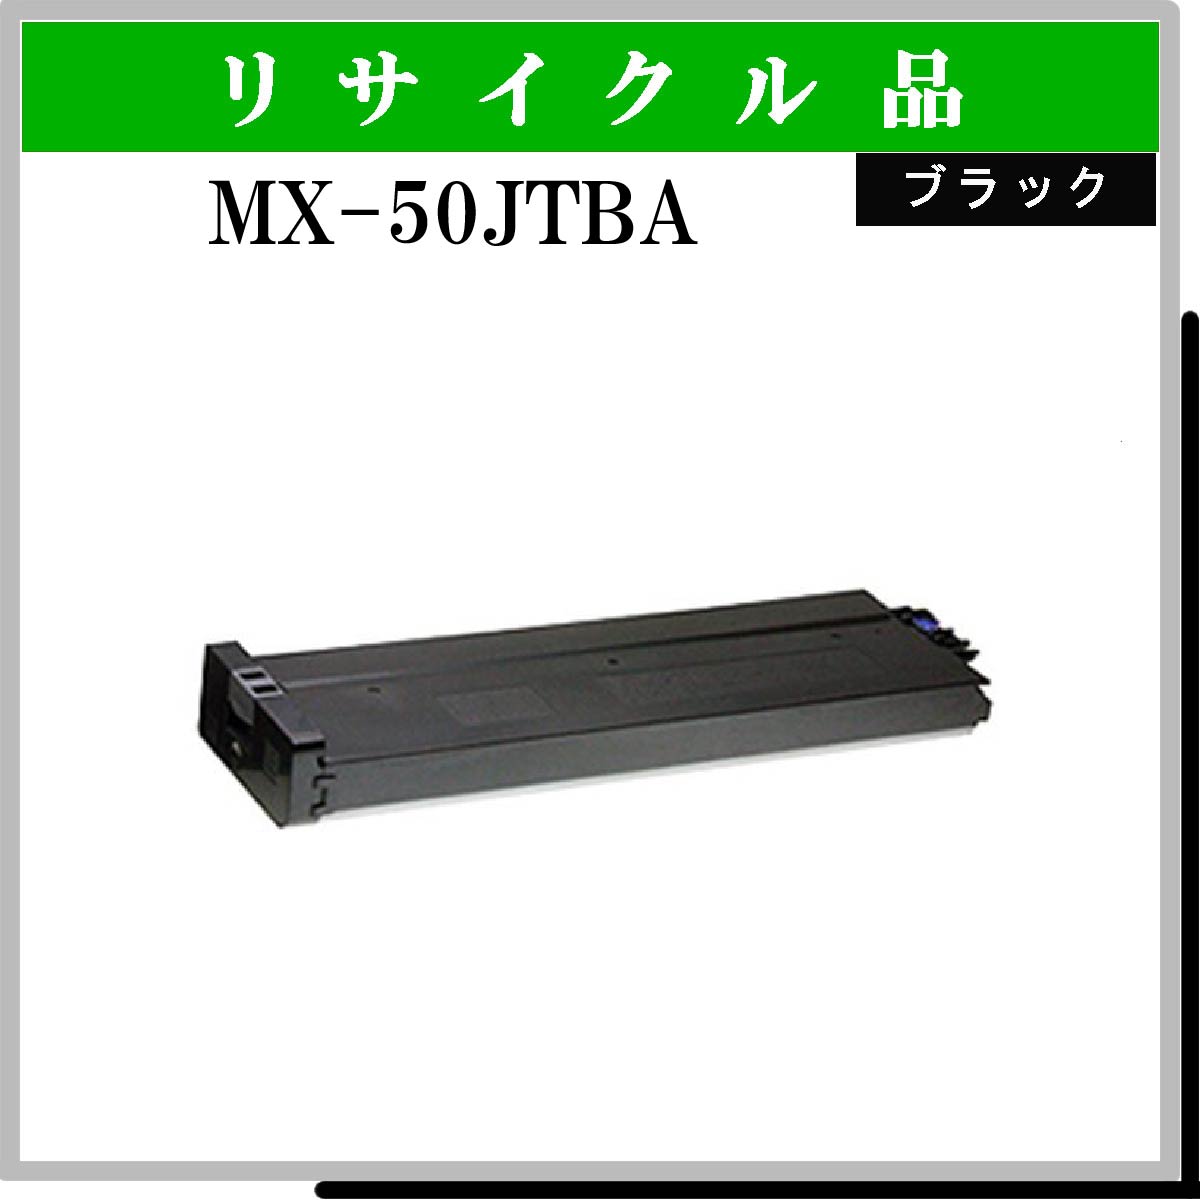 MX-50JTBA